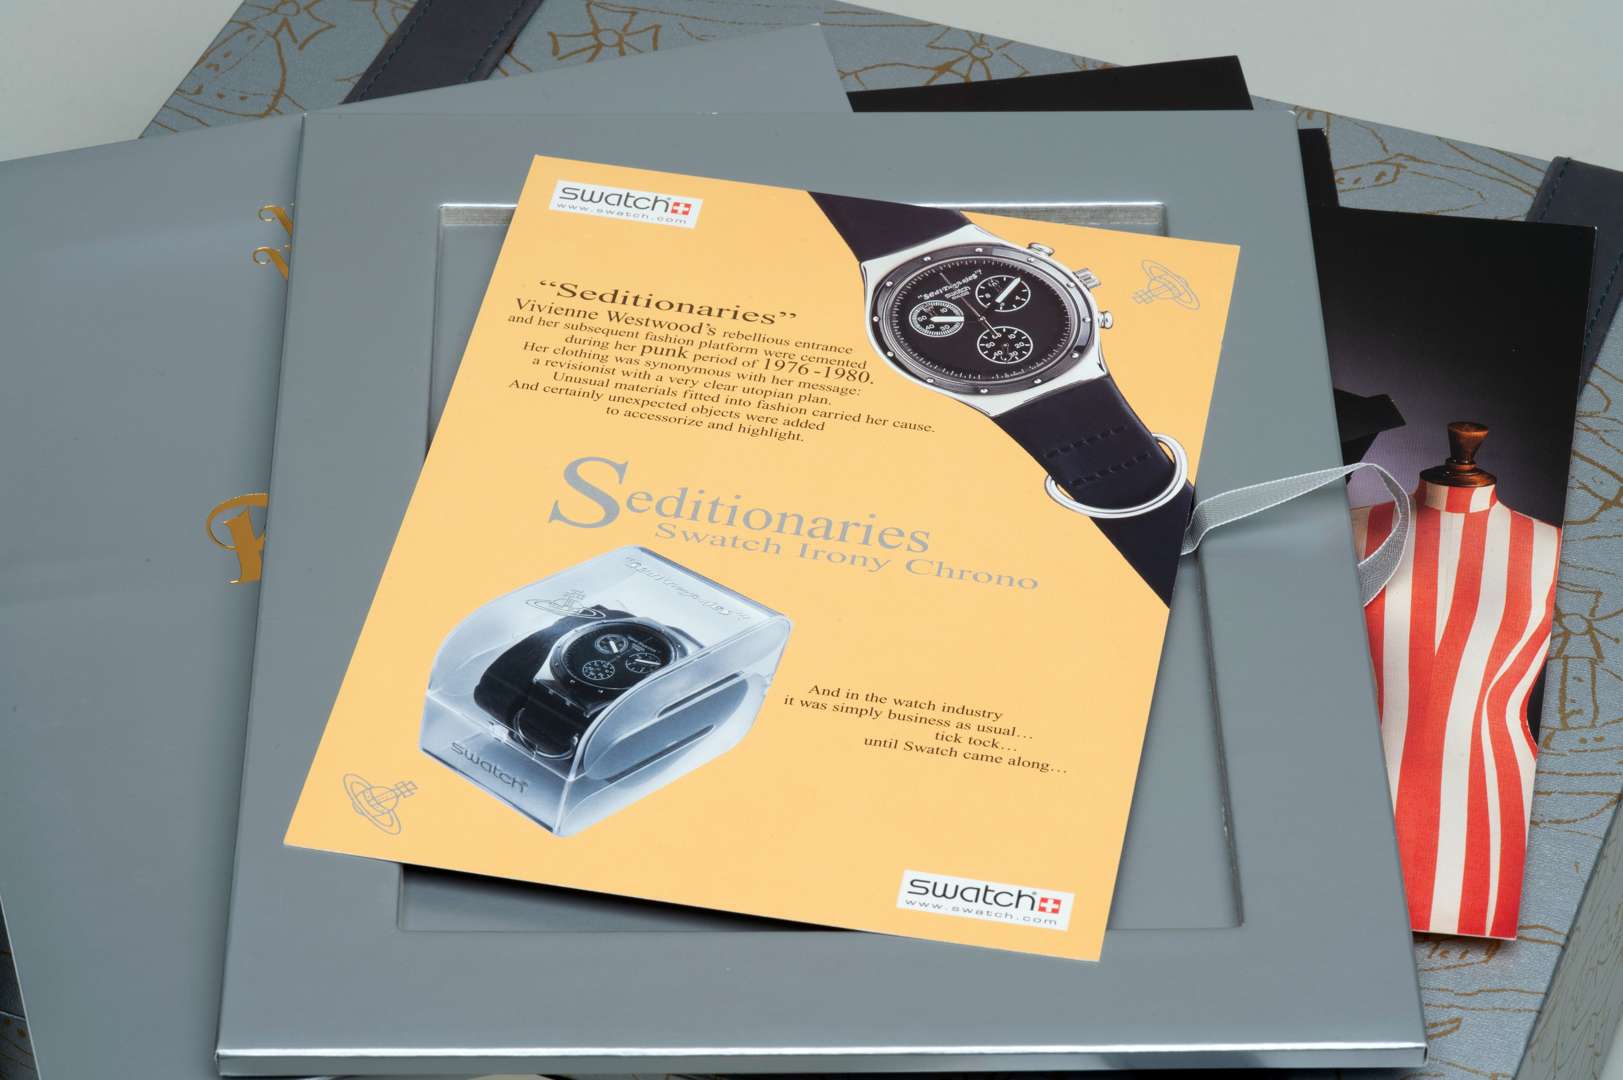 <p>Vivienne Westwood Swatch watch box set</p>